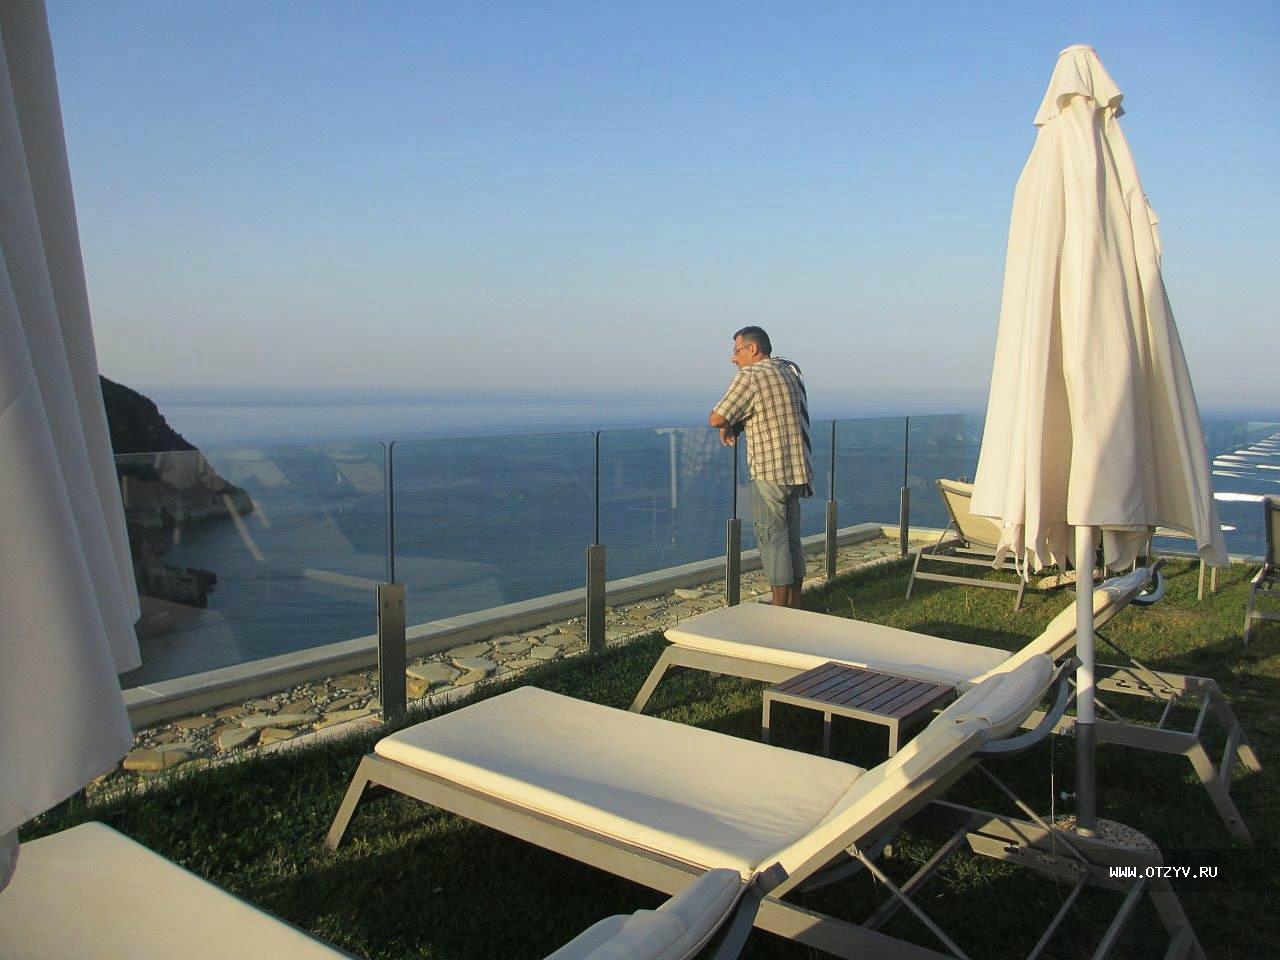 Grand Mediterraneo Resort & Spa